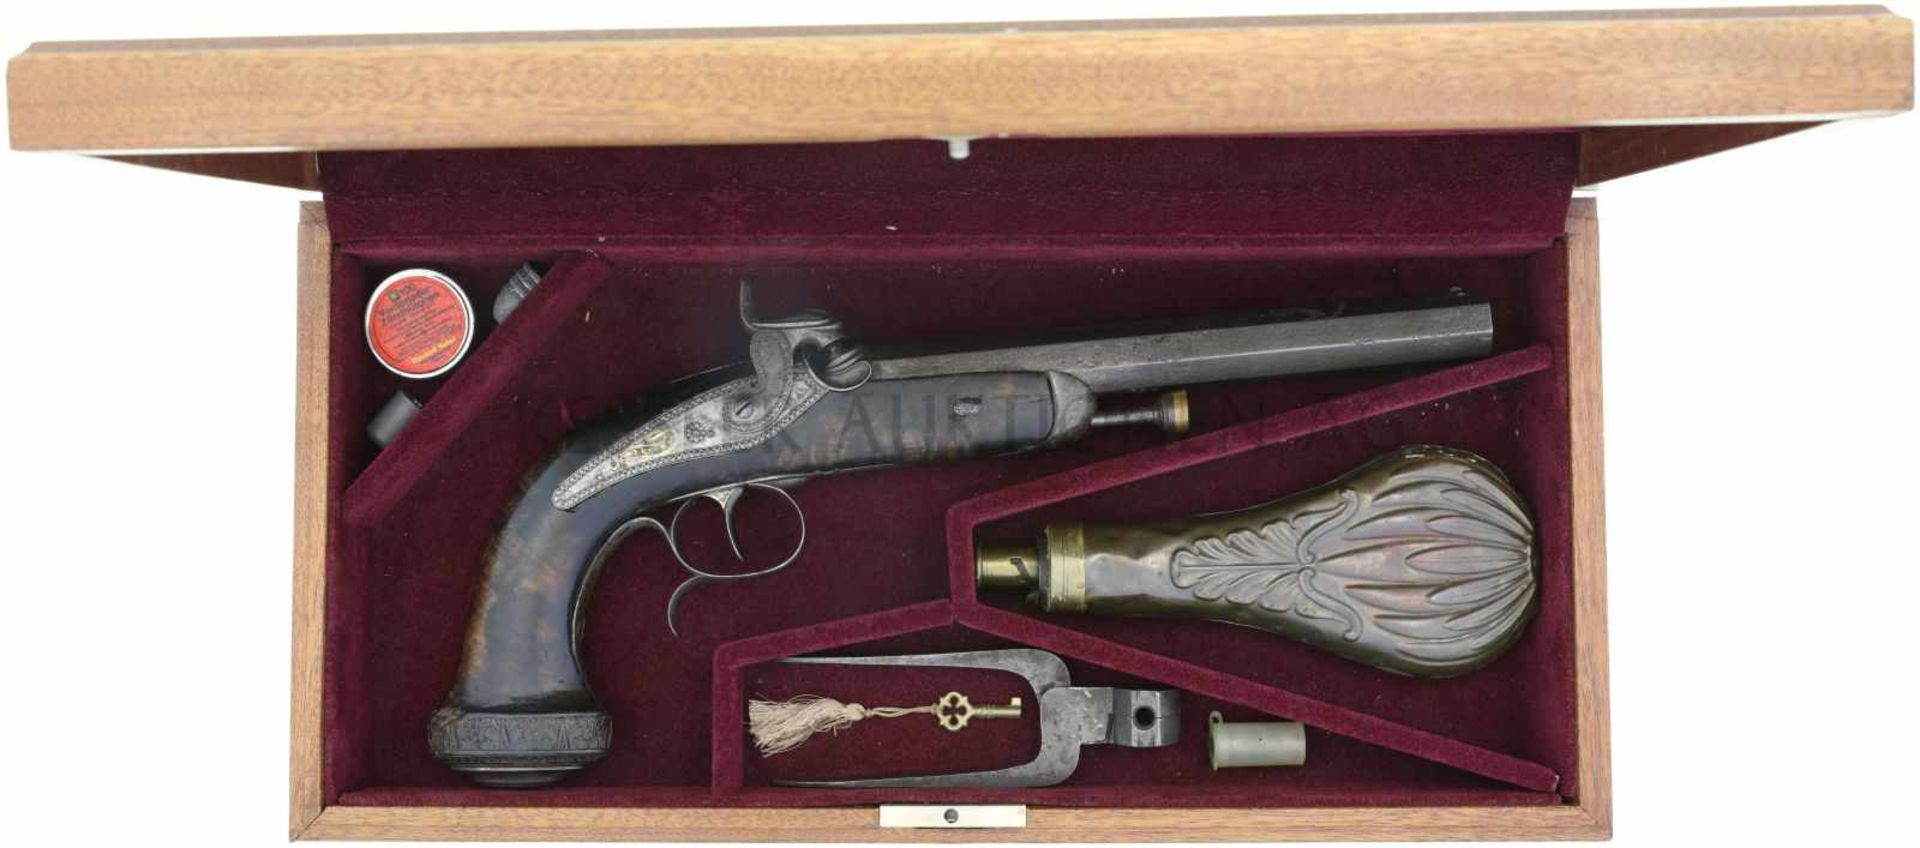 Perkussionspistole, Movet, franz. um 1820/30, Kal. 16.5mm LL 240mm, TL 390mm, achtkantiger Lauf,